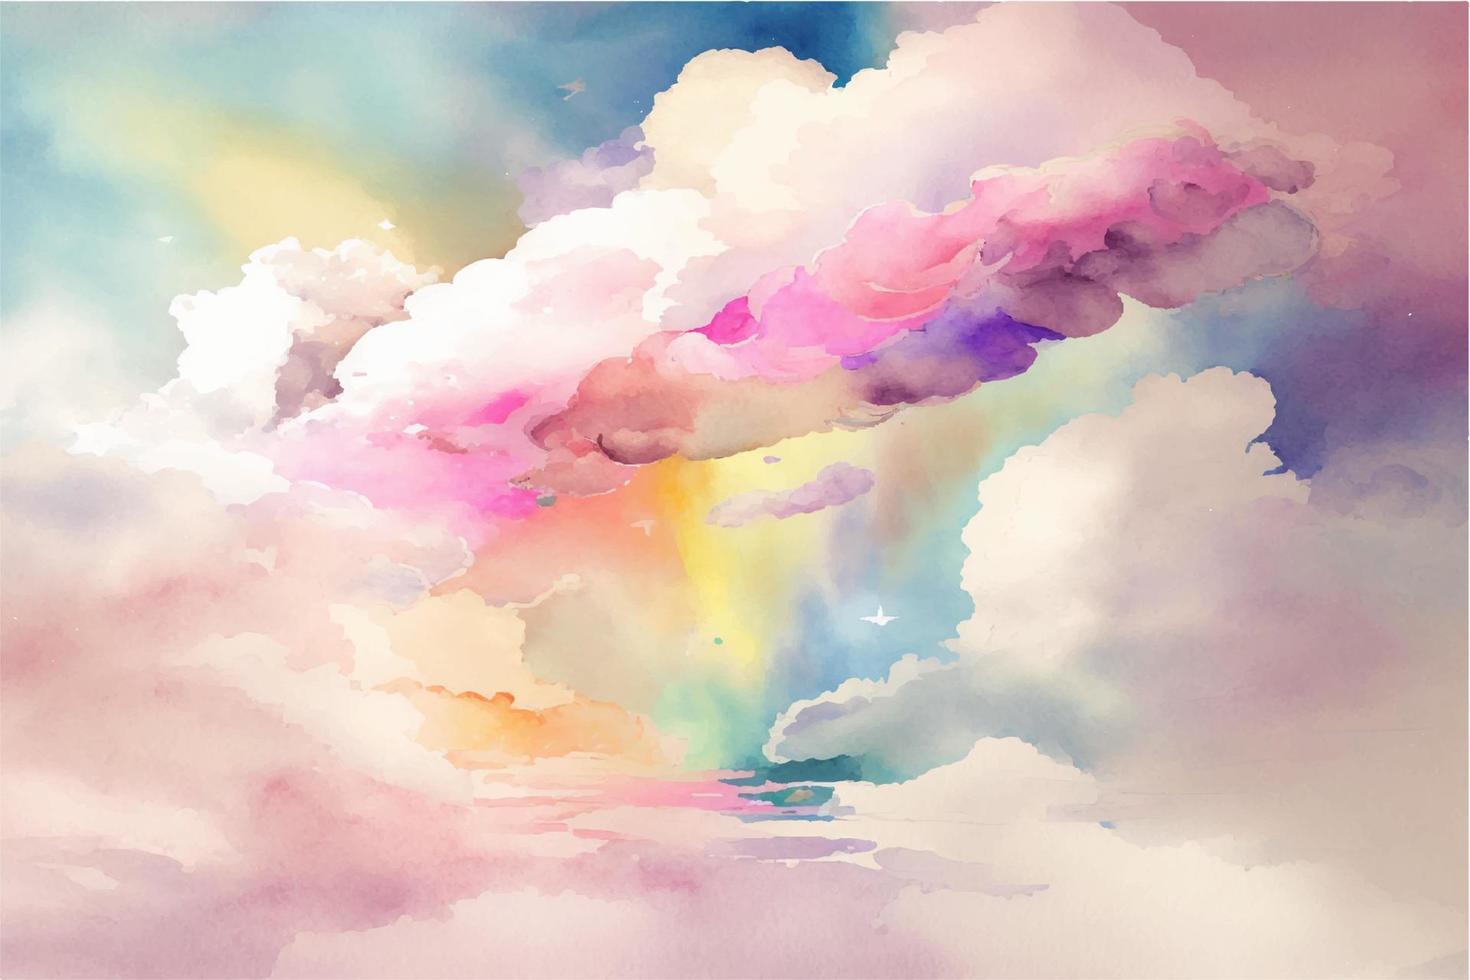 hand- geschilderd waterverf lucht wolk achtergrond met een pastel gekleurde vector